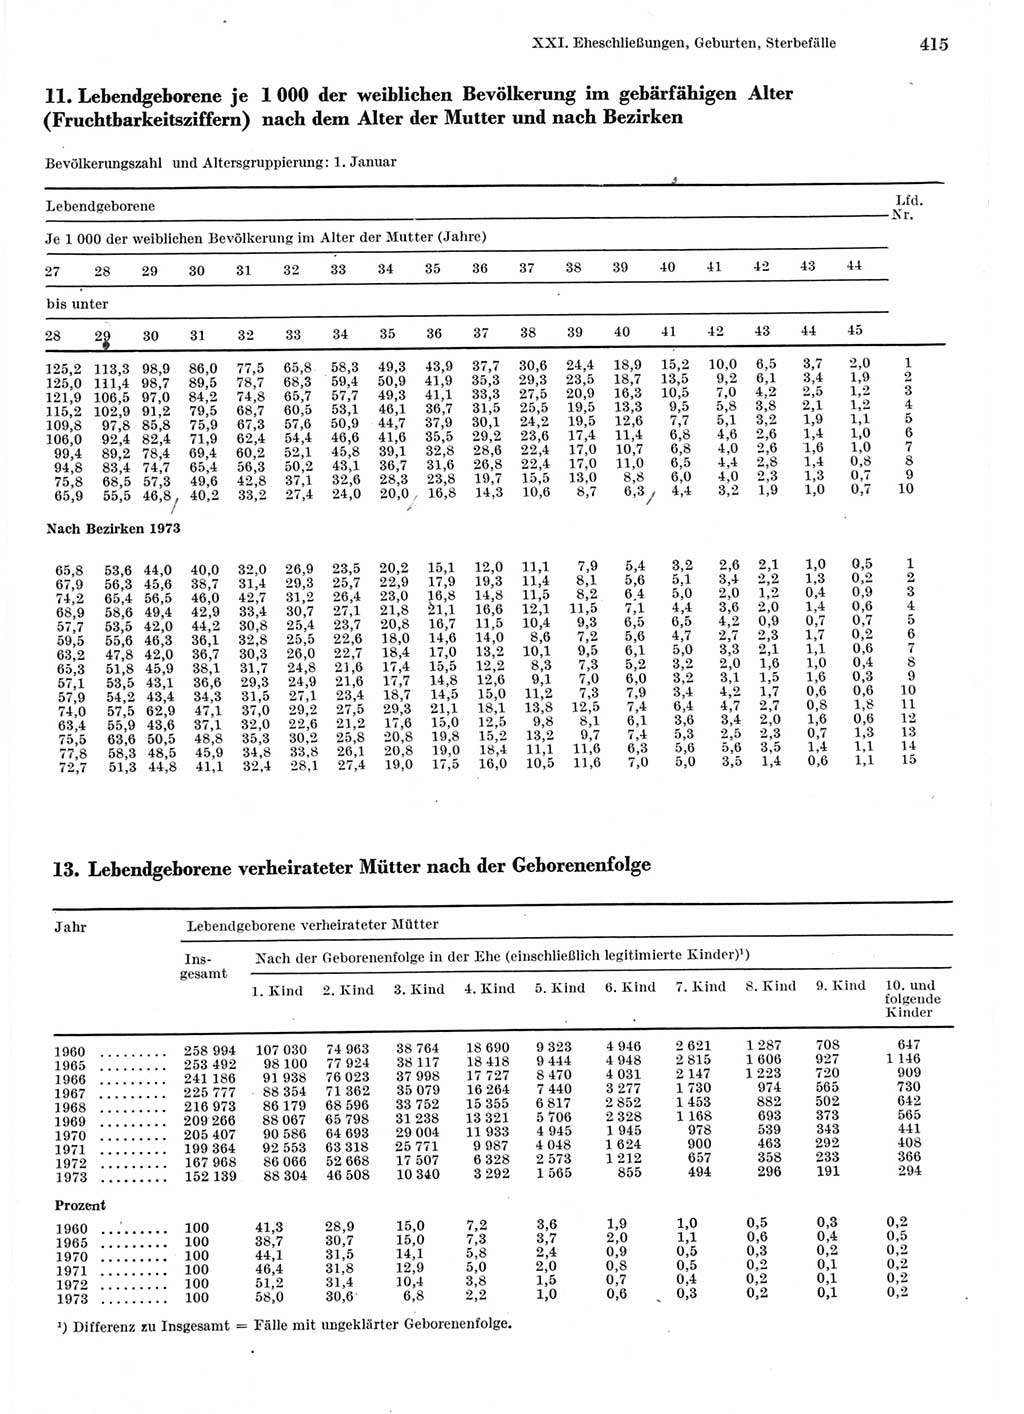 Statistisches Jahrbuch der Deutschen Demokratischen Republik (DDR) 1975, Seite 415 (Stat. Jb. DDR 1975, S. 415)